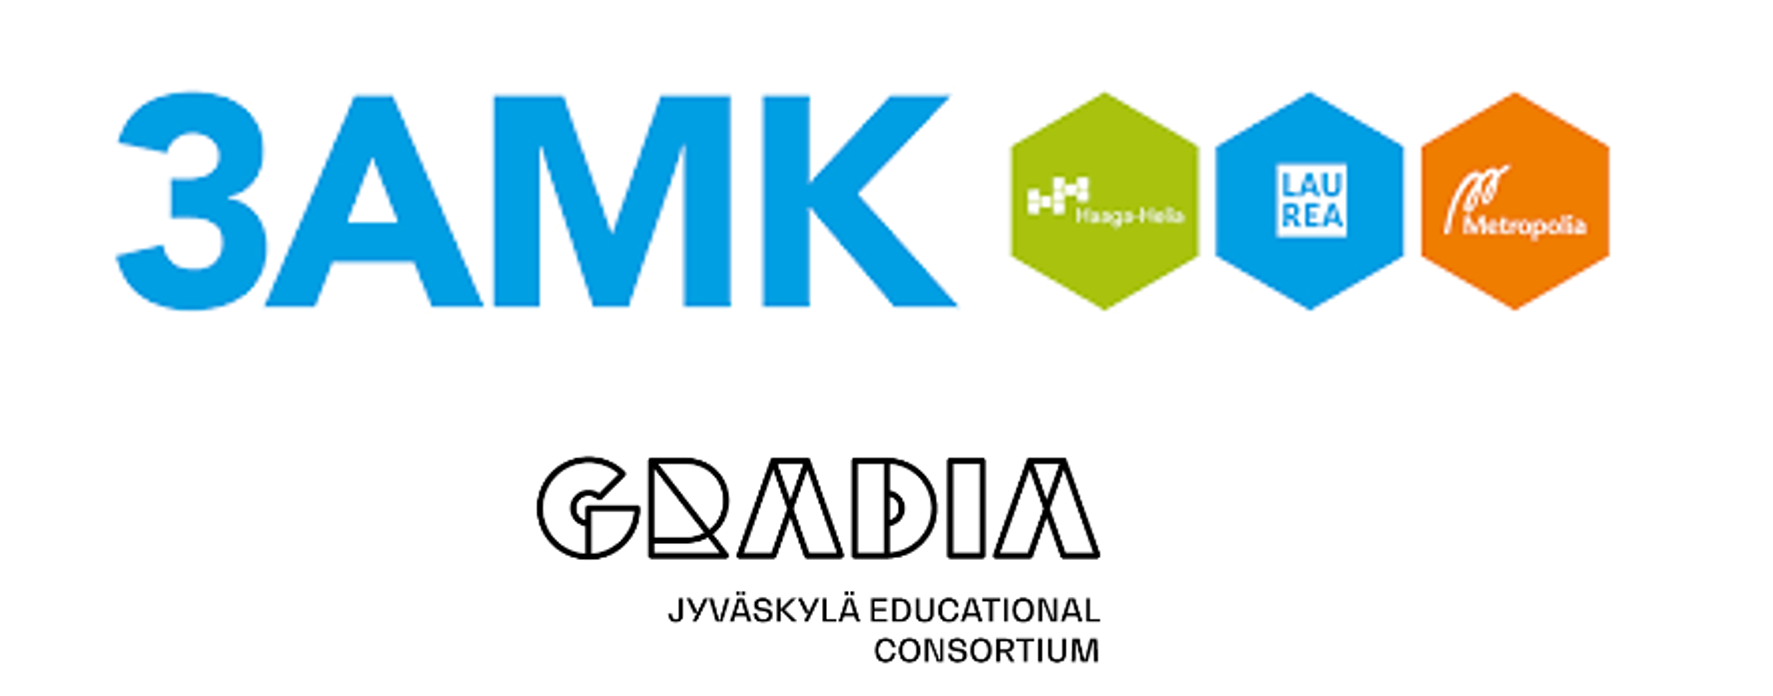 3AMK logo